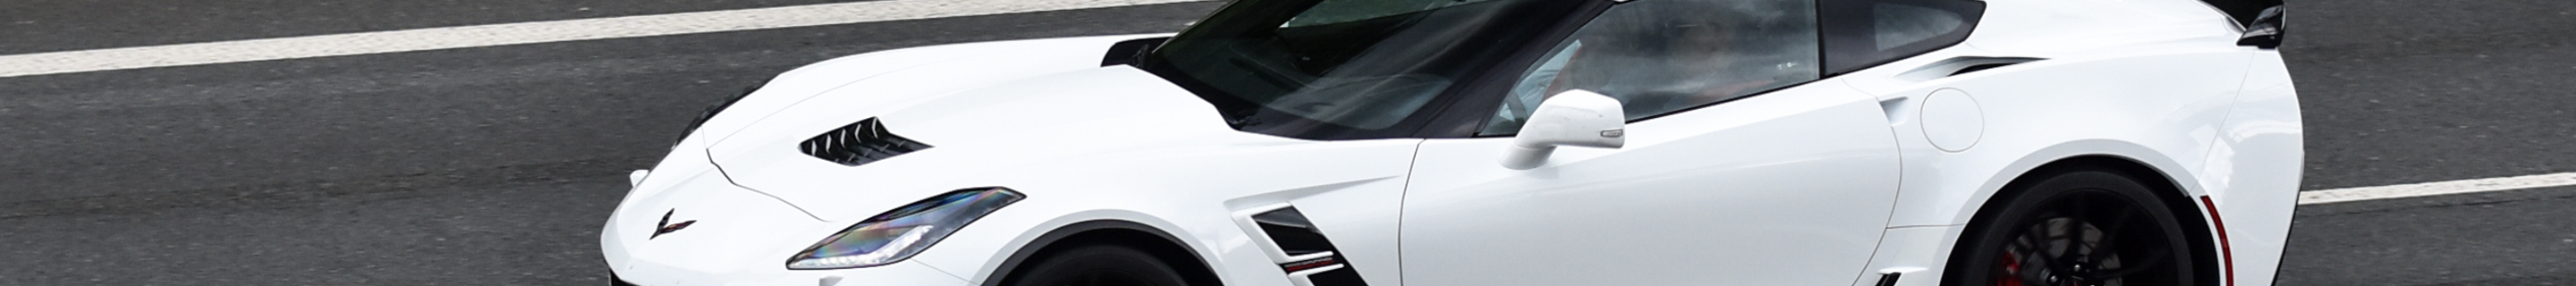 Chevrolet Corvette C7 Grand Sport